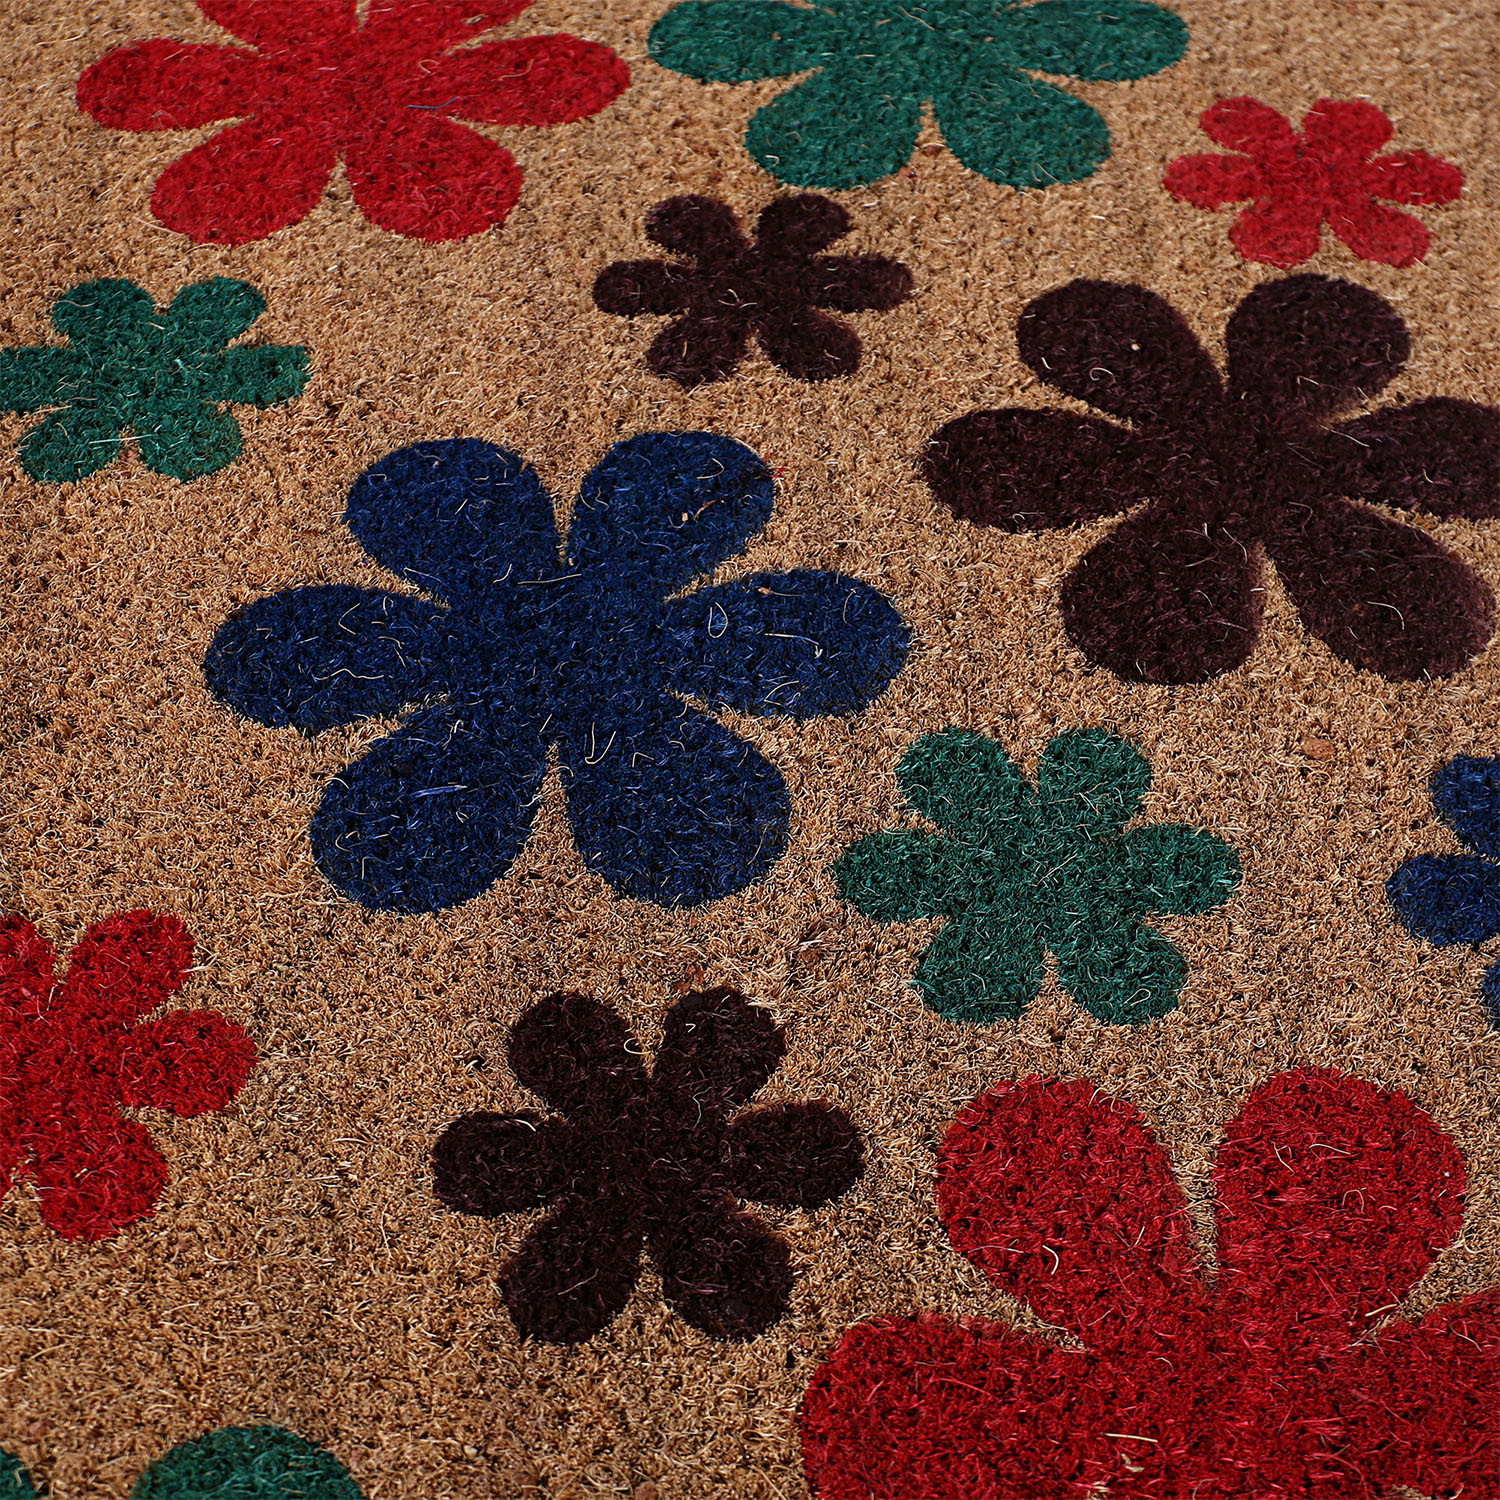 Kuber Industries Door Mat|Polyethylene Durable & Anti-Slip Natural Flowers Print Floor Mat|Rug For Indoor or Outdoor, 30x20 Inch (Brown)